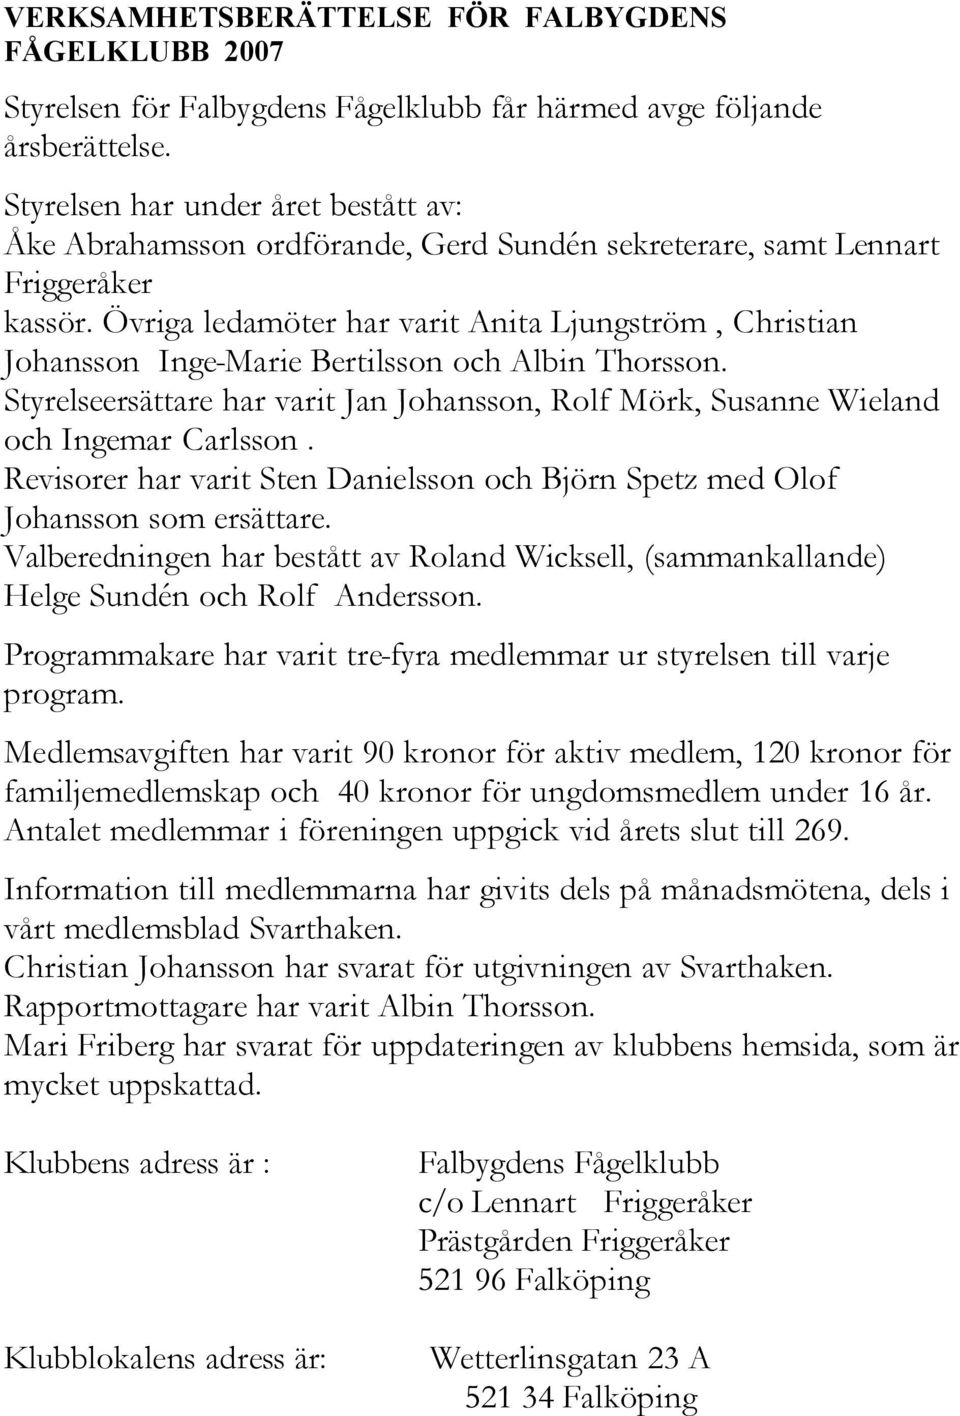 Övriga ledamöter har varit Anita Ljungström, Christian Johansson Inge-Marie Bertilsson och Albin Thorsson. Styrelseersättare har varit Jan Johansson, Rolf Mörk, Susanne Wieland och Ingemar Carlsson.